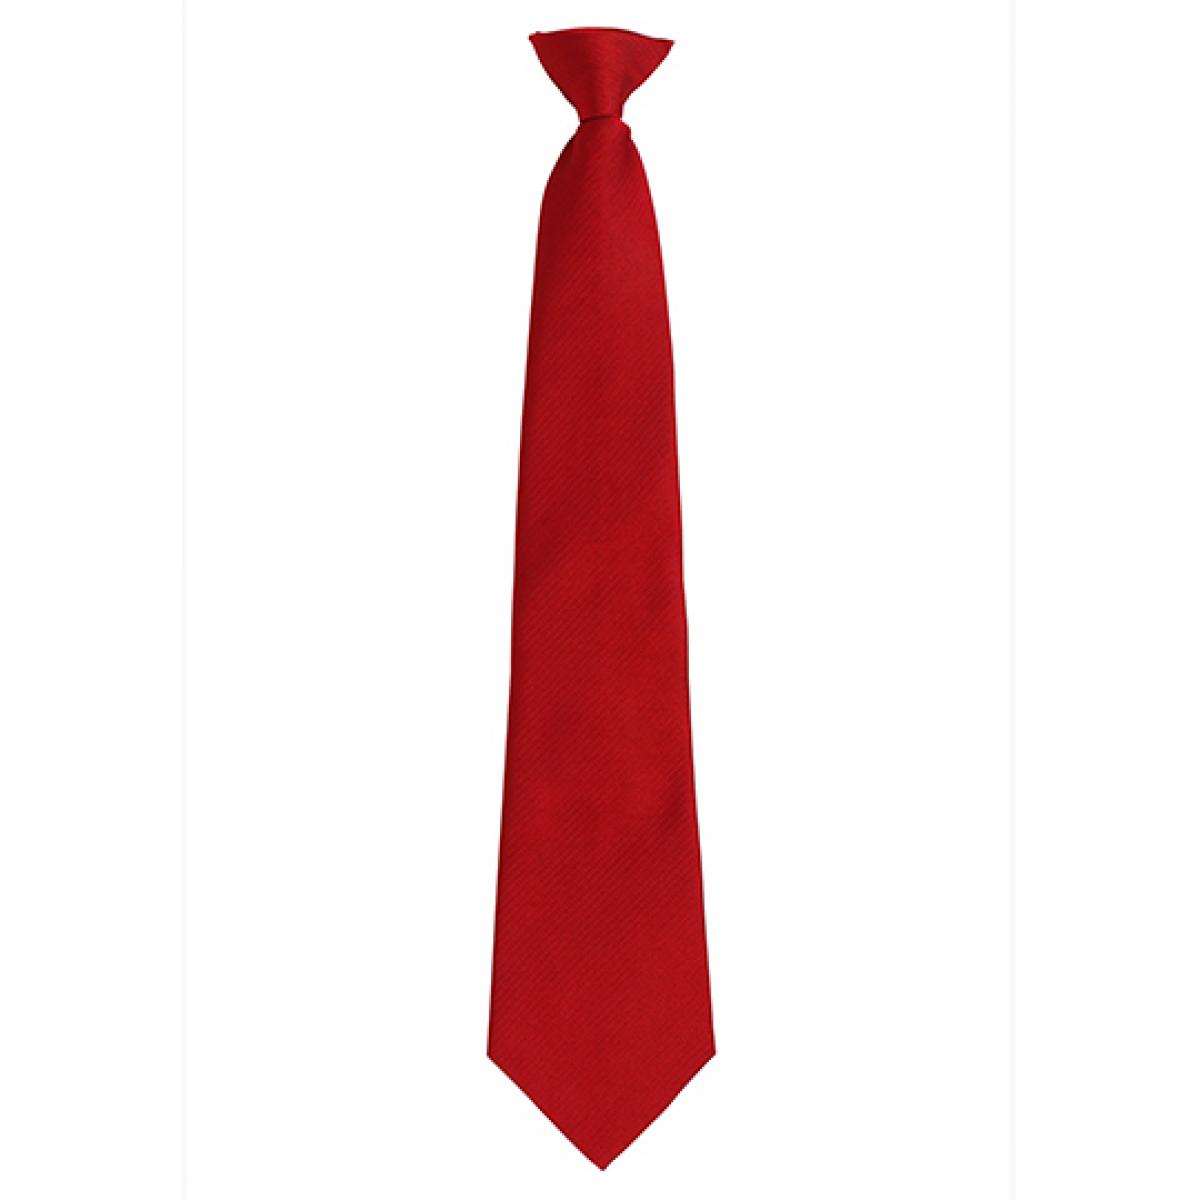 Hersteller: Premier Workwear Herstellernummer: PR785 Artikelbezeichnung: ´Colours´ Fashion Clip Tie Farbe: Red (ca. Pantone 199C)